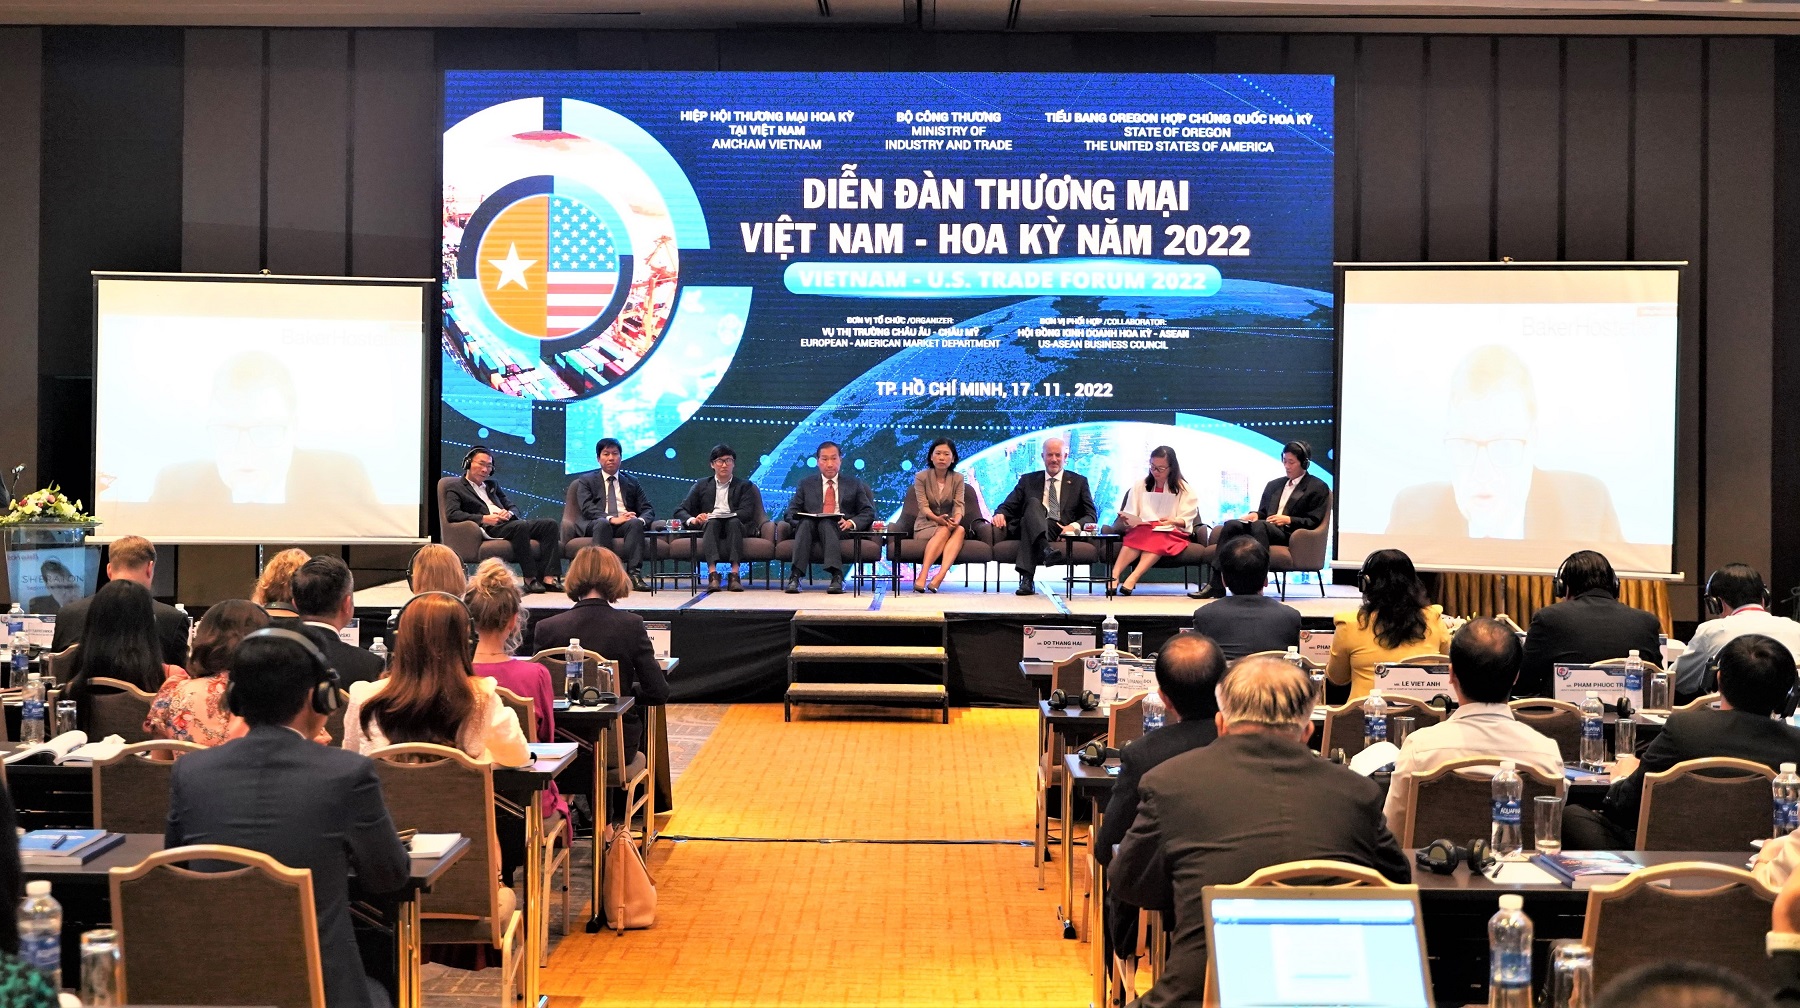 Diễn dàn Thương mại Việt Nam - Hoa Kỳ thường niên năm 2022, với chủ đề “Thay đổi - Thách thức - Thích ứng”